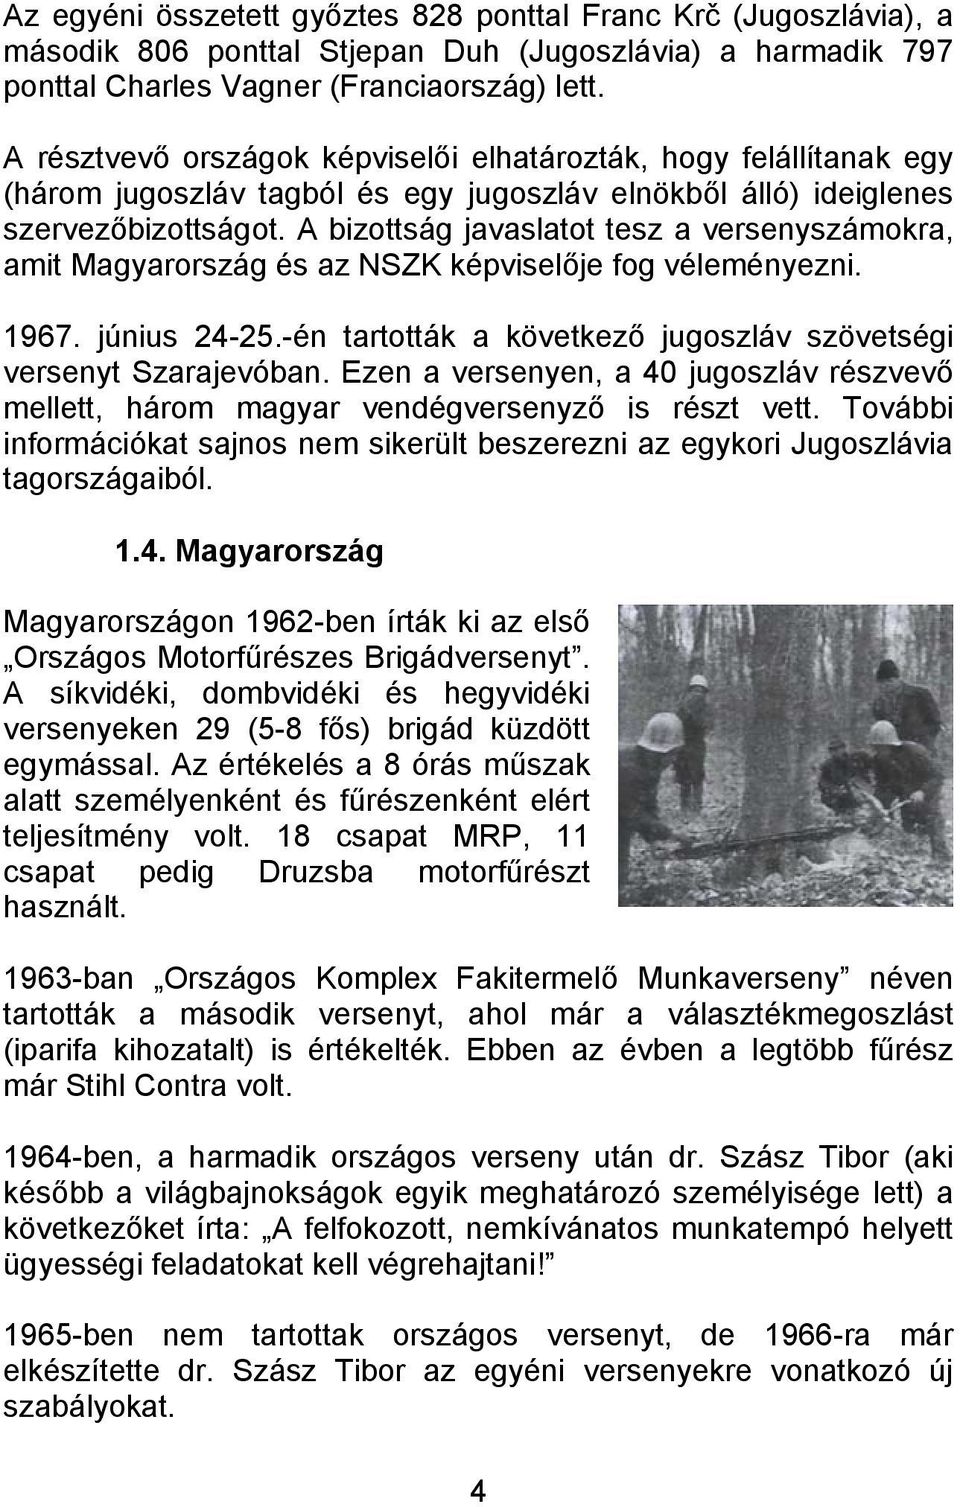 A bizottság javaslatot tesz a versenyszámokra, amit Magyarország és az NSZK képviselője fog véleményezni. 1967. június 24-25.-én tartották a következő jugoszláv szövetségi versenyt Szarajevóban.